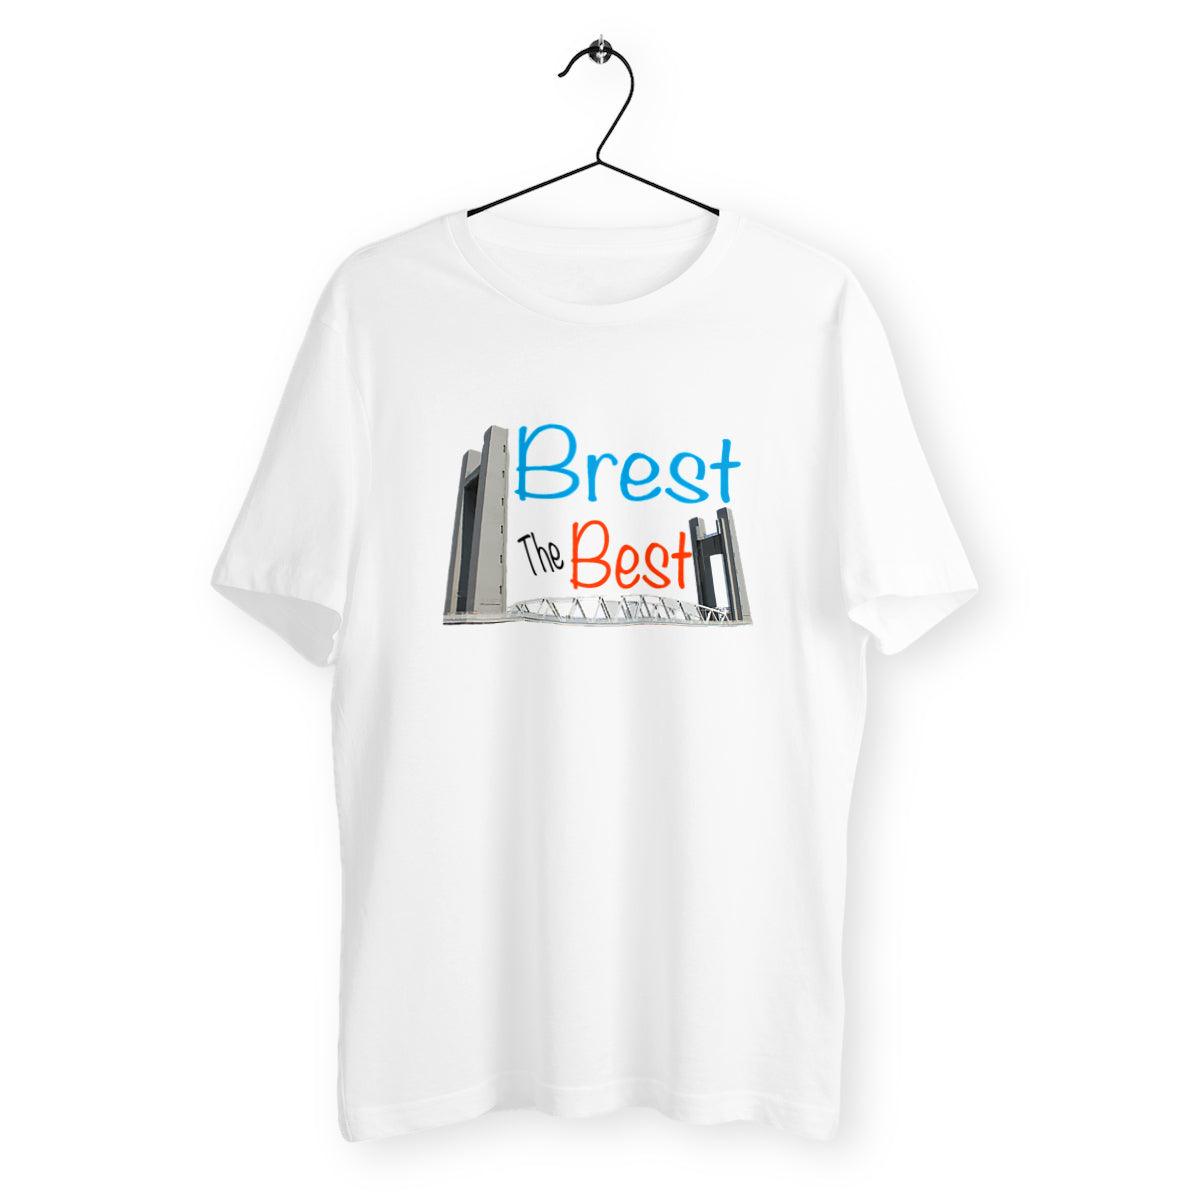 Tee-shirt Brest The Best - 100% coton biologique - Unisexe - Autocollant BZH